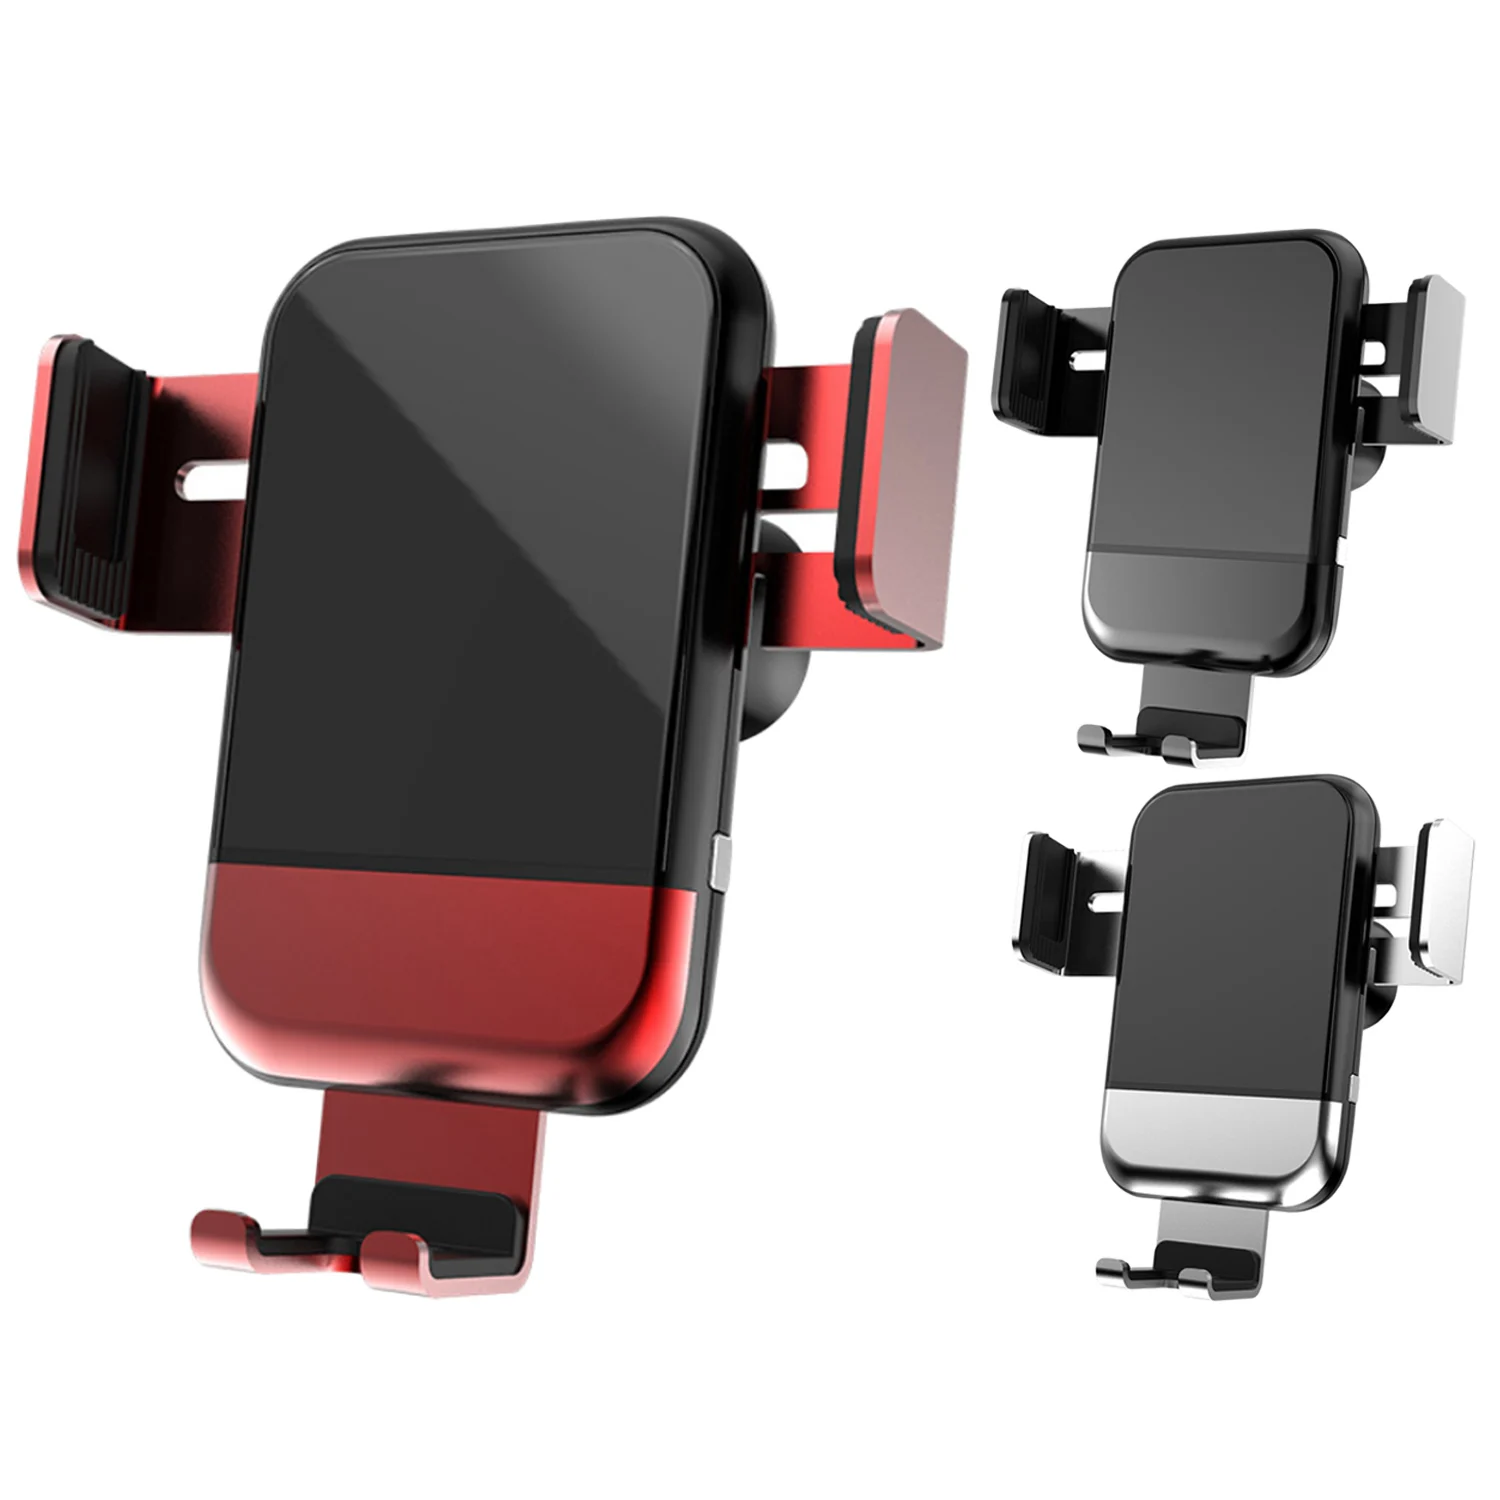 Besegad автоматическое зажимное регулируемое беспроводное автомобильное зарядное устройство с вентиляционным отверстием для телефона кронштейн для зарядки для iPhone X samsung Xiaomi